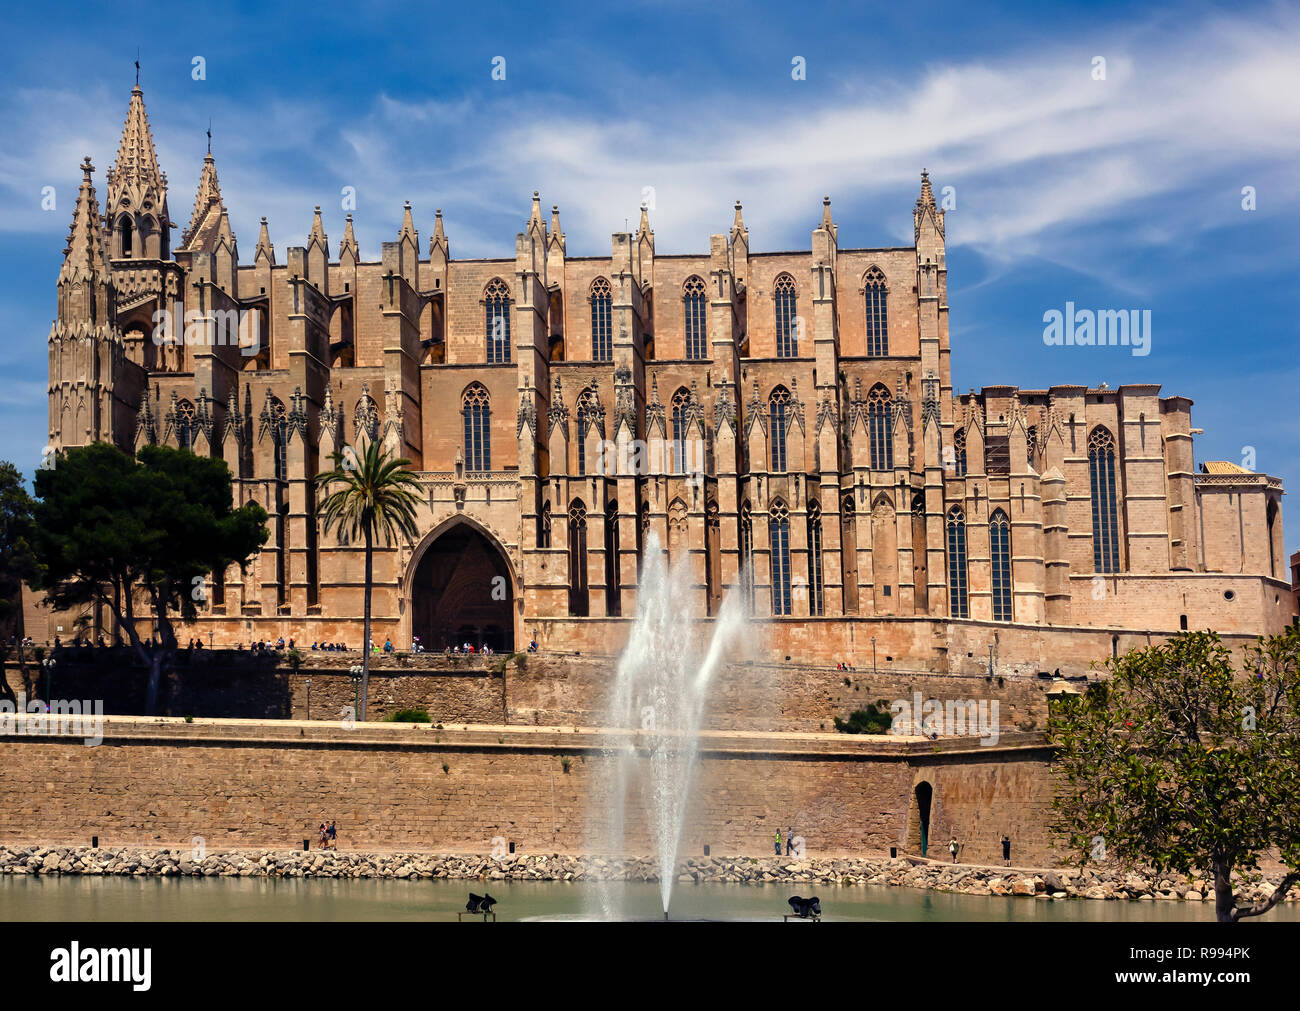 PALMA DE MAJORCA, SPAIN - MAY 23, 2018: View of Palma Cathedral (Catedral de Santa María de Palma de Mallorca) Stock Photo